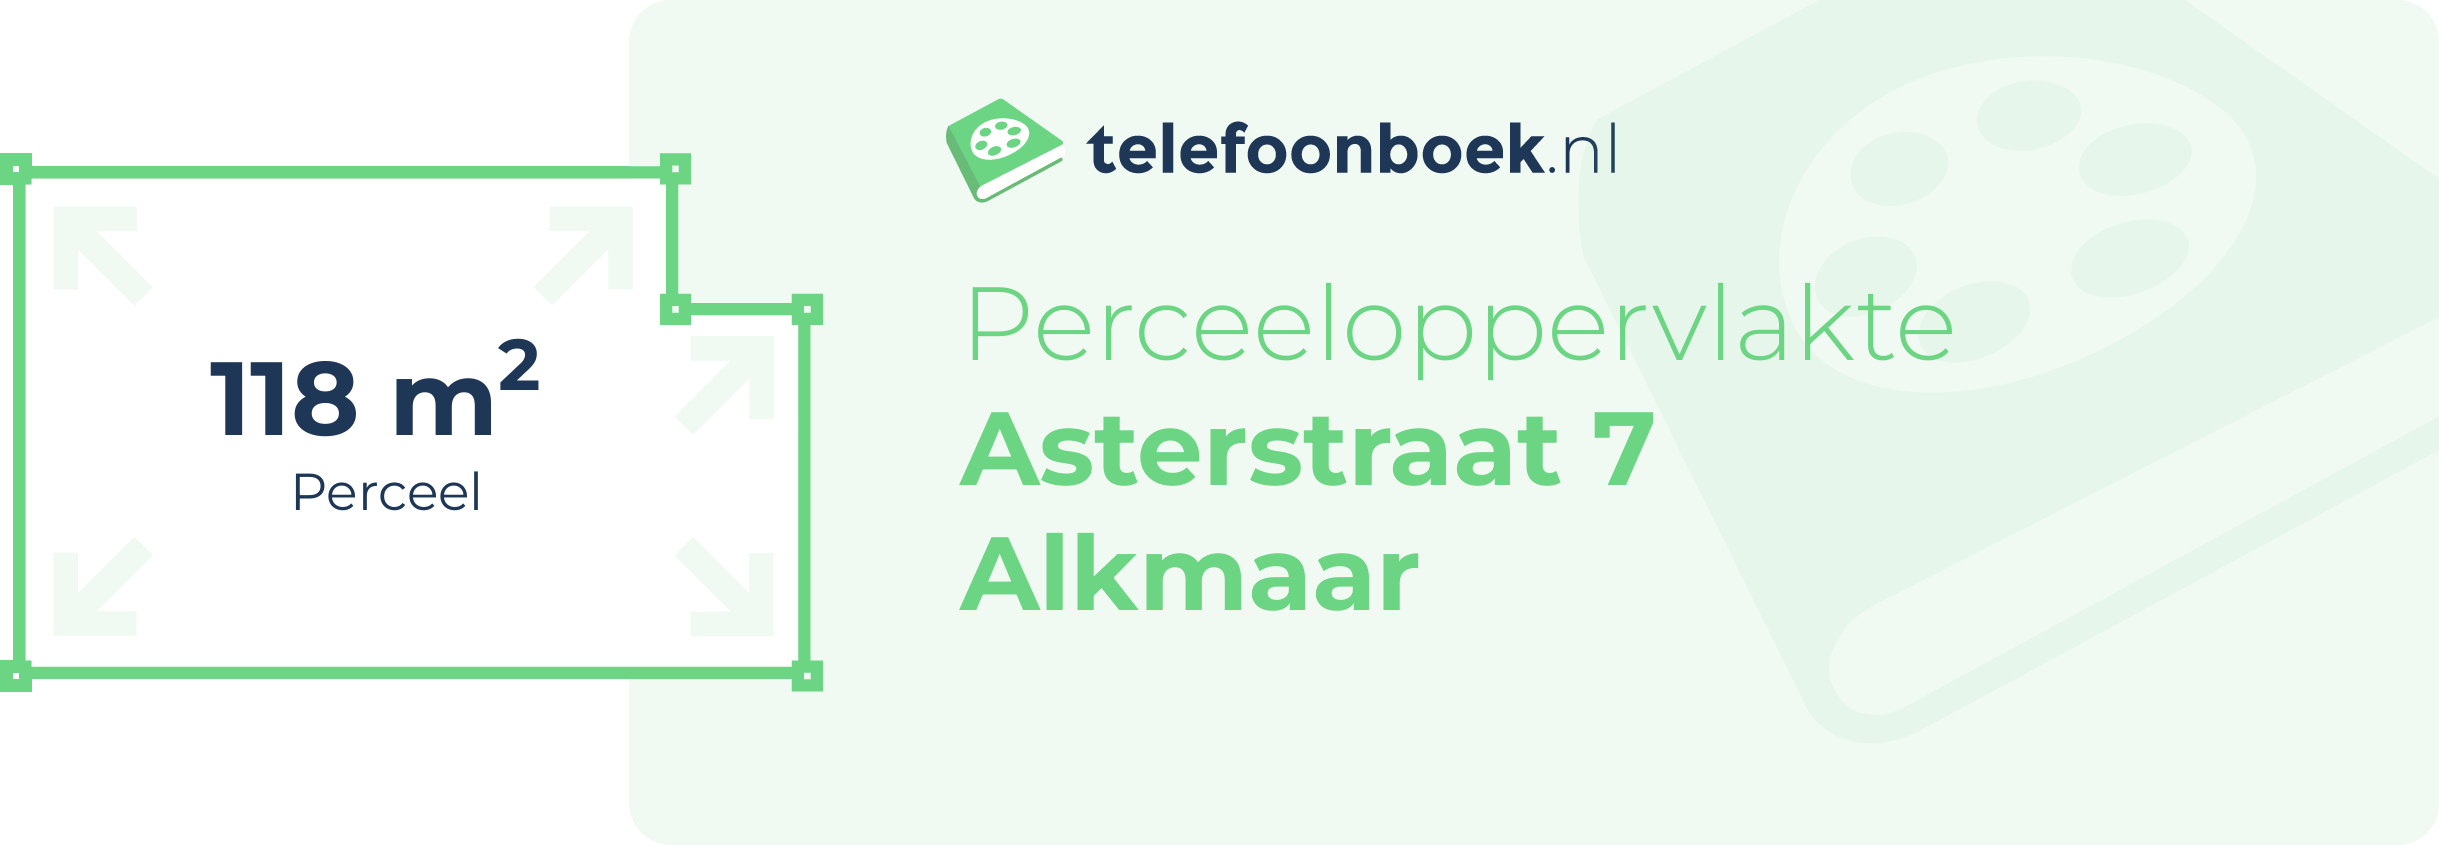 Perceeloppervlakte Asterstraat 7 Alkmaar